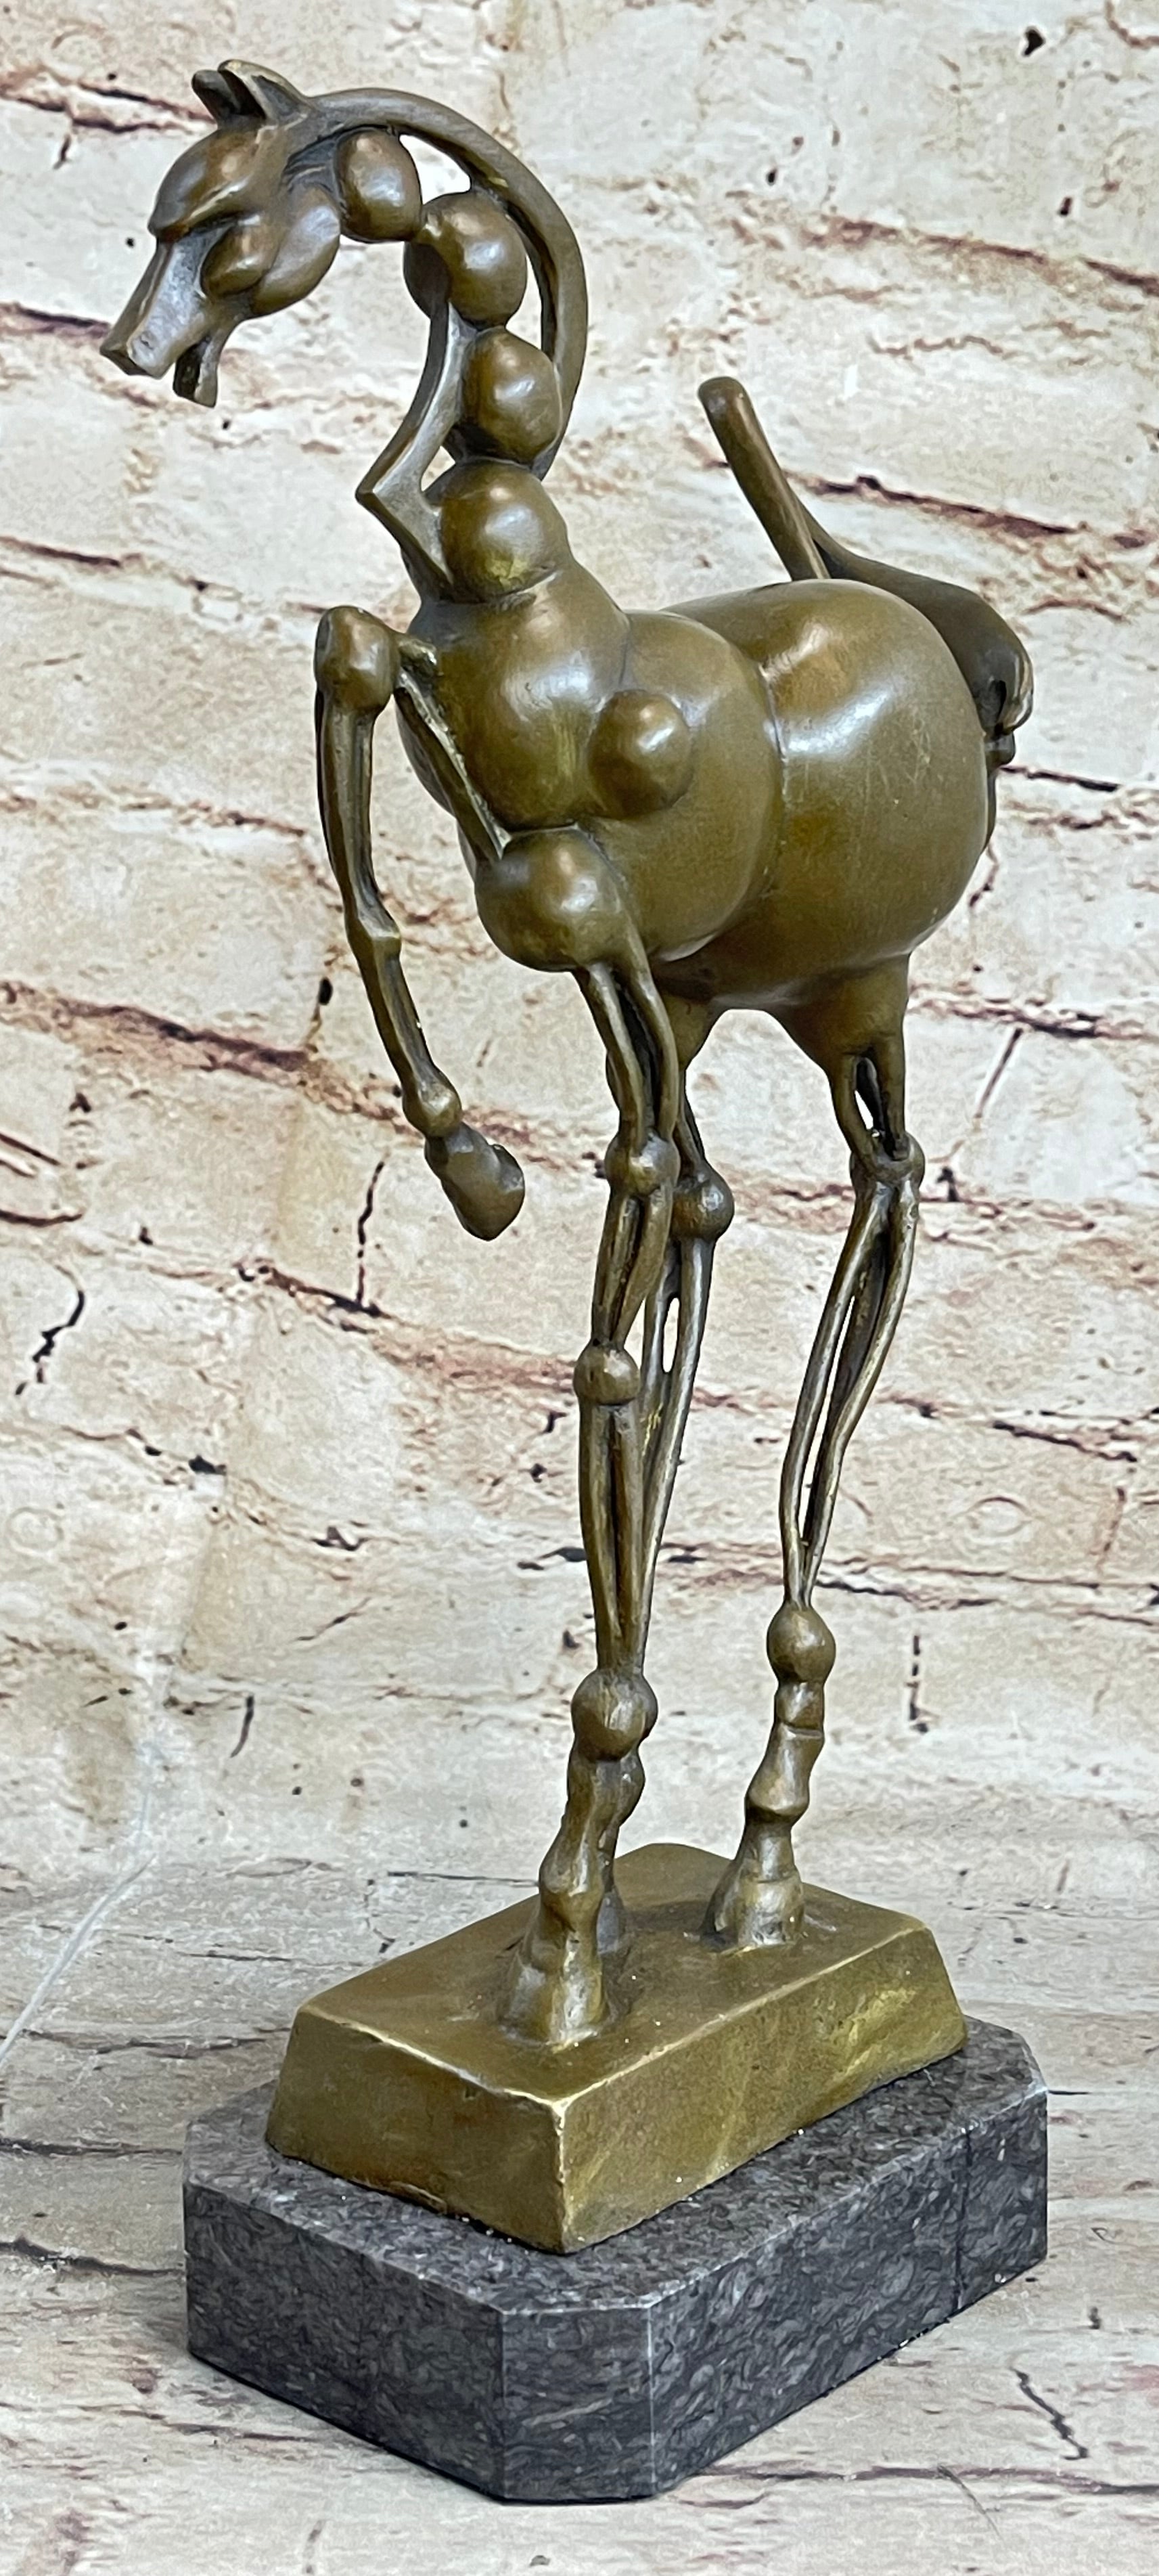 Bronze Sculpture Hot Cast by Lost wax Method Picasso Horse Stallion Figurine Art